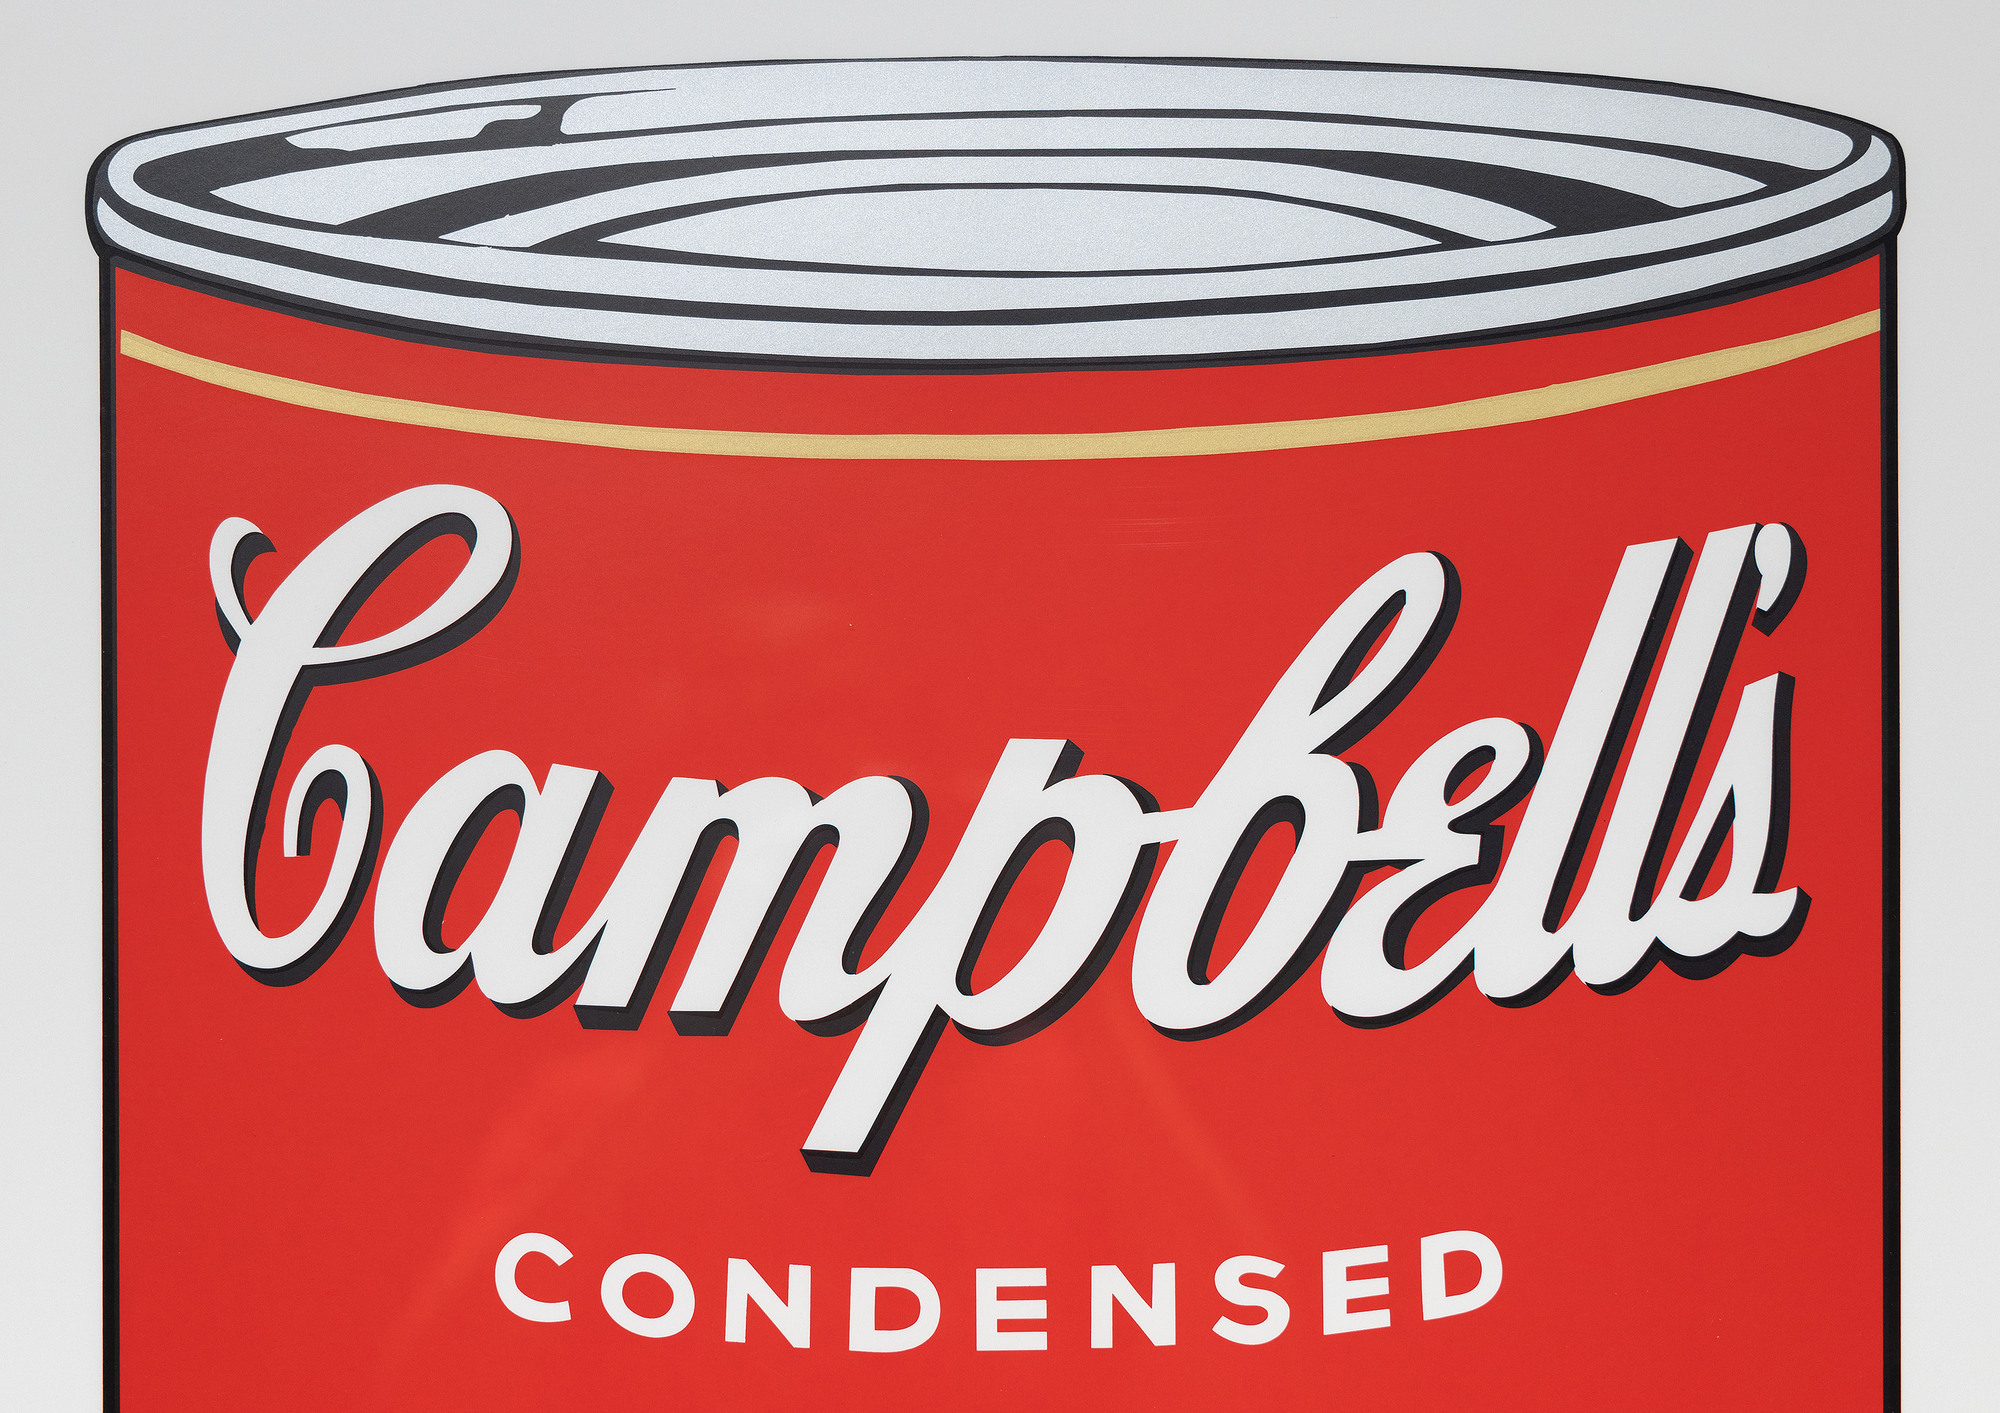 La série des boîtes de soupe Campbell d&#039;Andy Warhol marque un tournant dans sa carrière et dans le mouvement du Pop Art. Cette série, composée de 32 toiles représentant chacune une saveur différente, a révolutionné le monde de l&#039;art en élevant des produits de consommation courante au rang d&#039;œuvres d&#039;art. La sérigraphie Pepper Pot de 1968 utilise son style caractéristique de couleurs vives et plates et d&#039;images répétées, caractéristiques de la production de masse et de la culture de consommation. La sérigraphie, une technique commerciale, correspond à l&#039;intérêt de Warhol de brouiller les lignes entre le grand art et l&#039;art commercial, en remettant en question les valeurs et les perceptions artistiques.